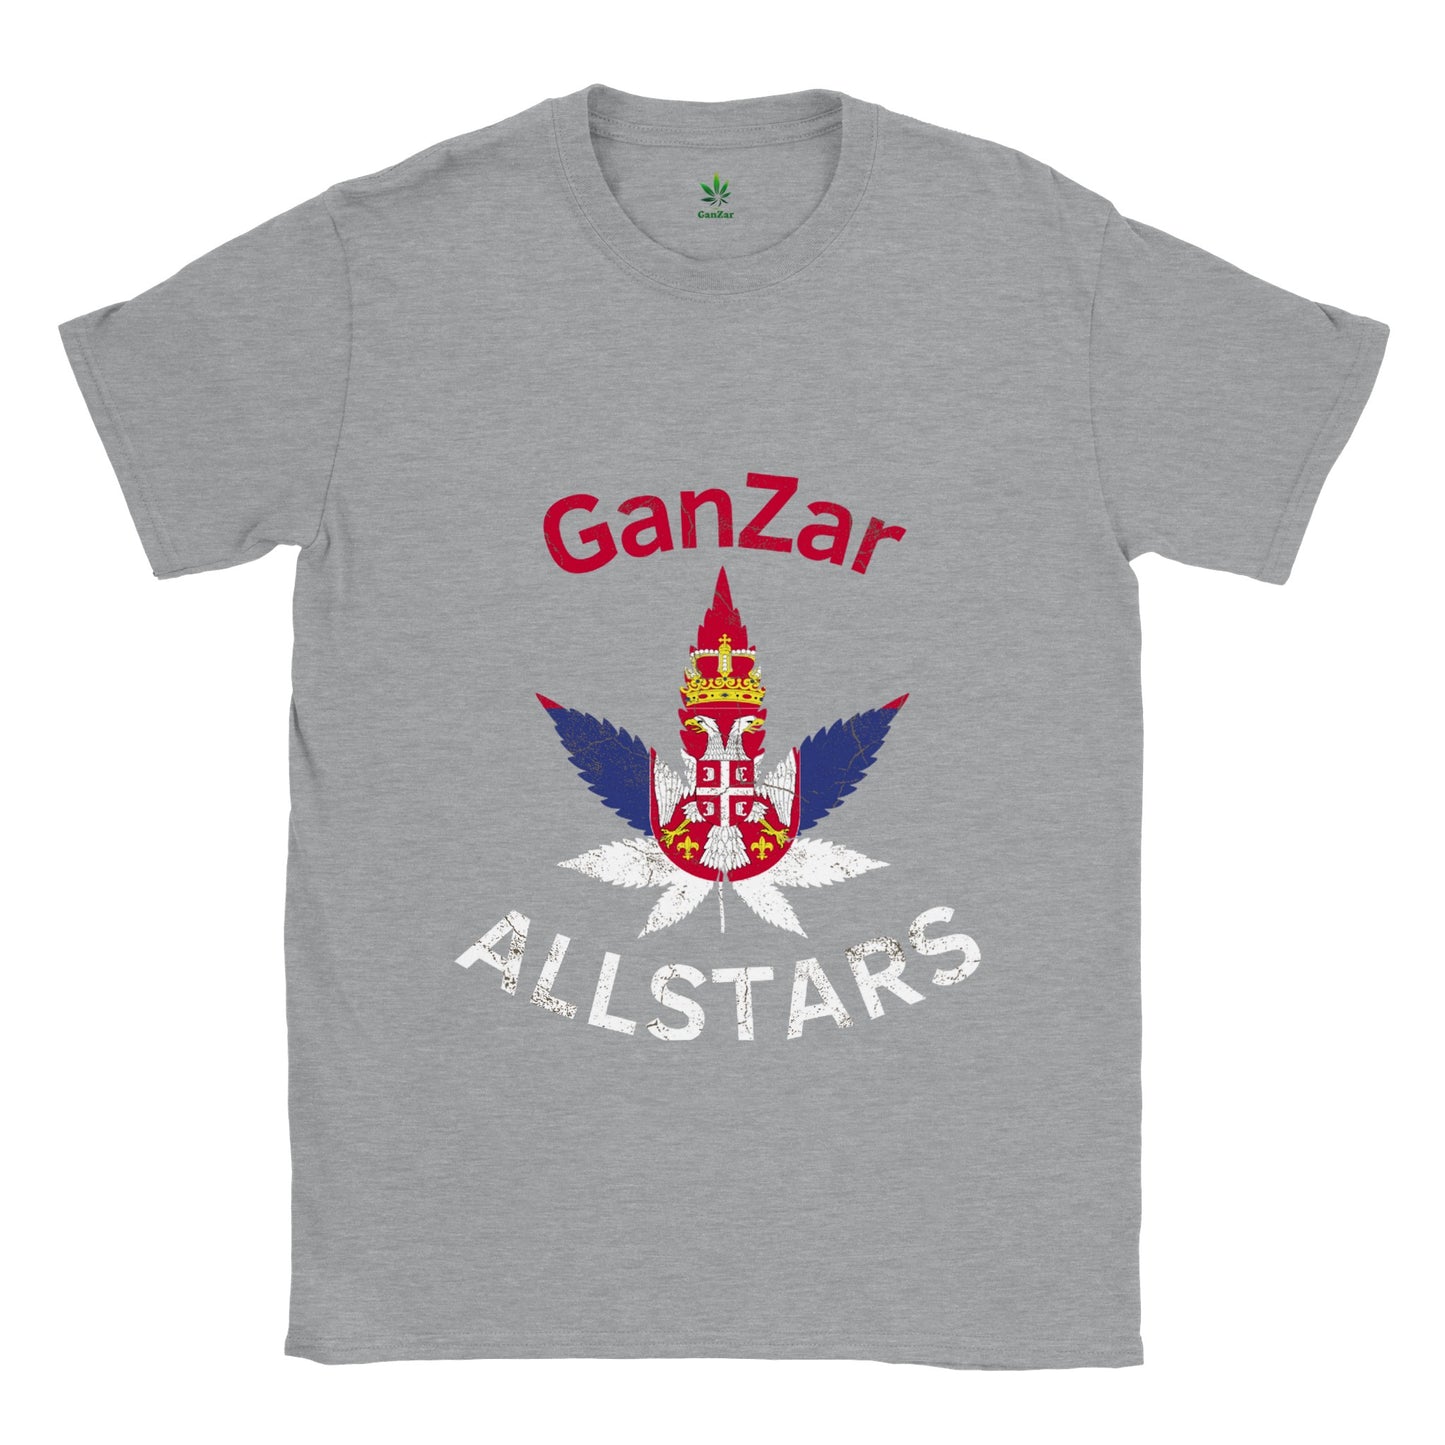 Serbia GanZar Allstars Unisex T-Shirt